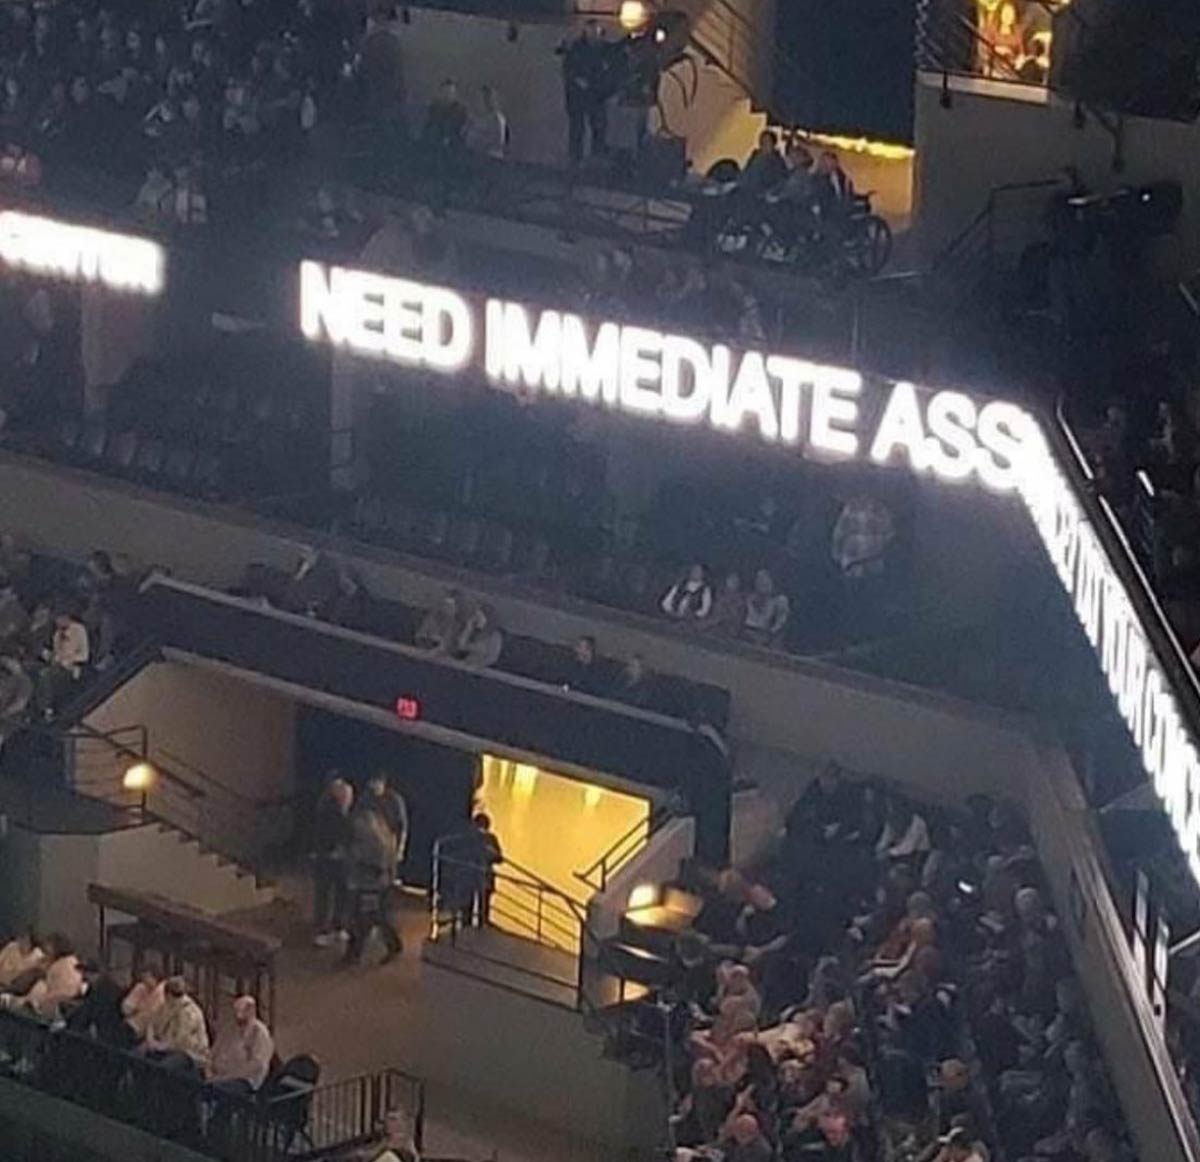 Need Immediate Ass!